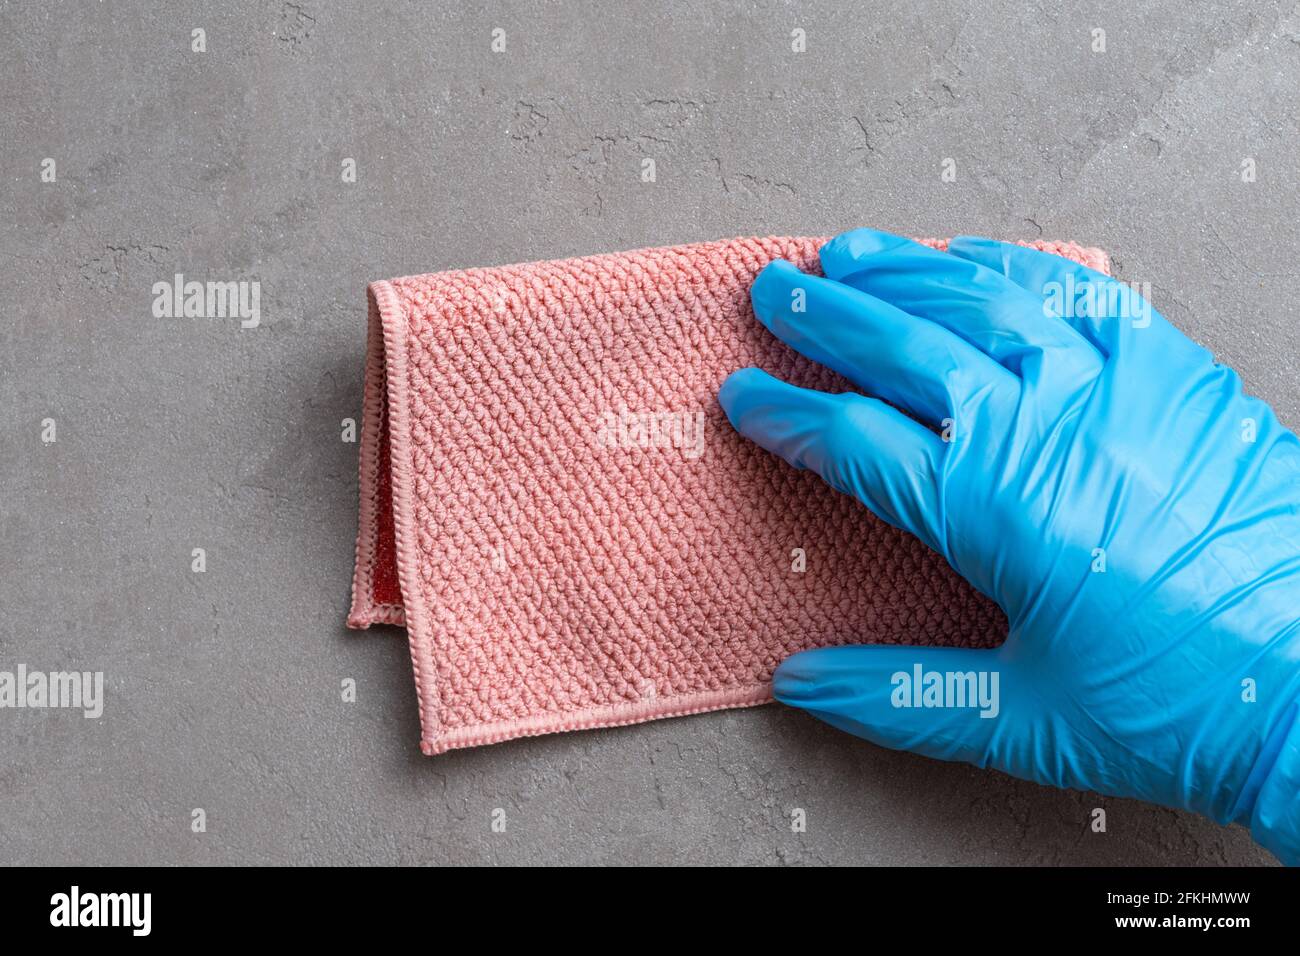 Pulizia della casa. Una mano in un guanto di lattice blu sta sfregando un panno di microfibra rosa su una superficie di intonaco grigio, primo piano. Foto Stock